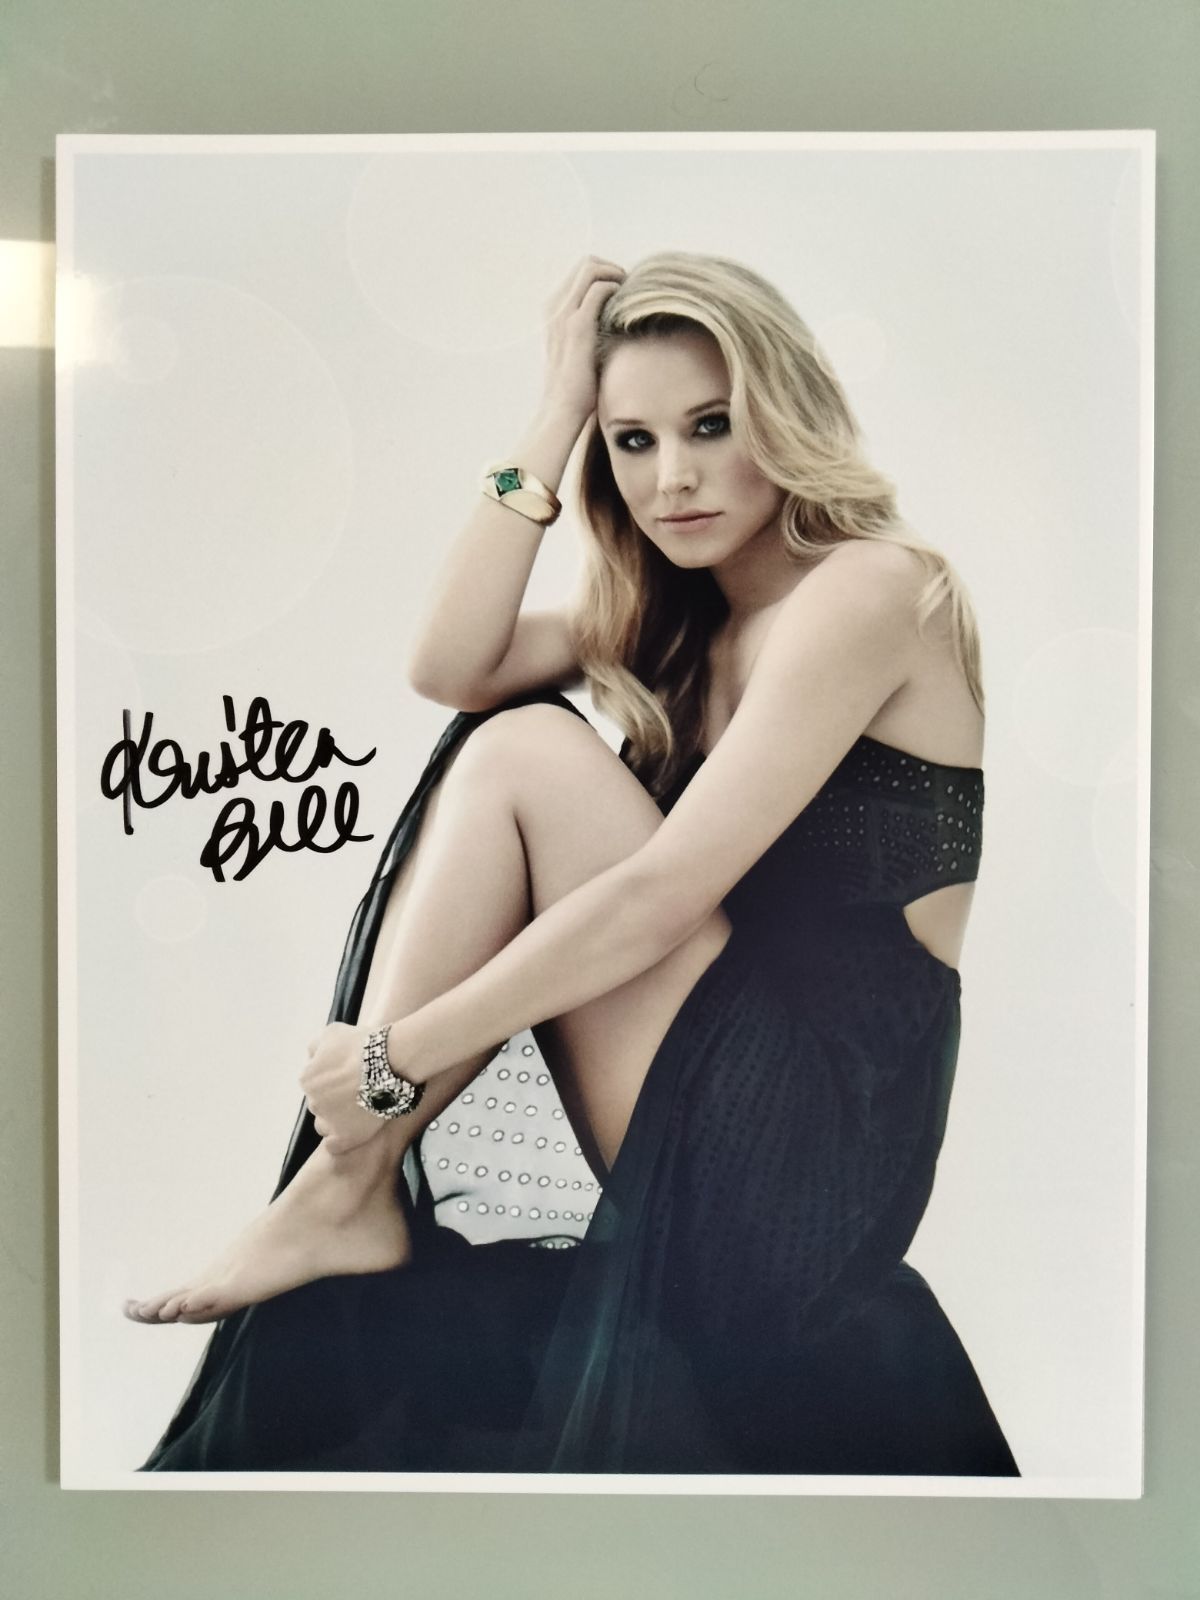 クリスティン・ベル直筆サイン入り超大型写真…Kristen Bell…ゴシップガール - メルカリ